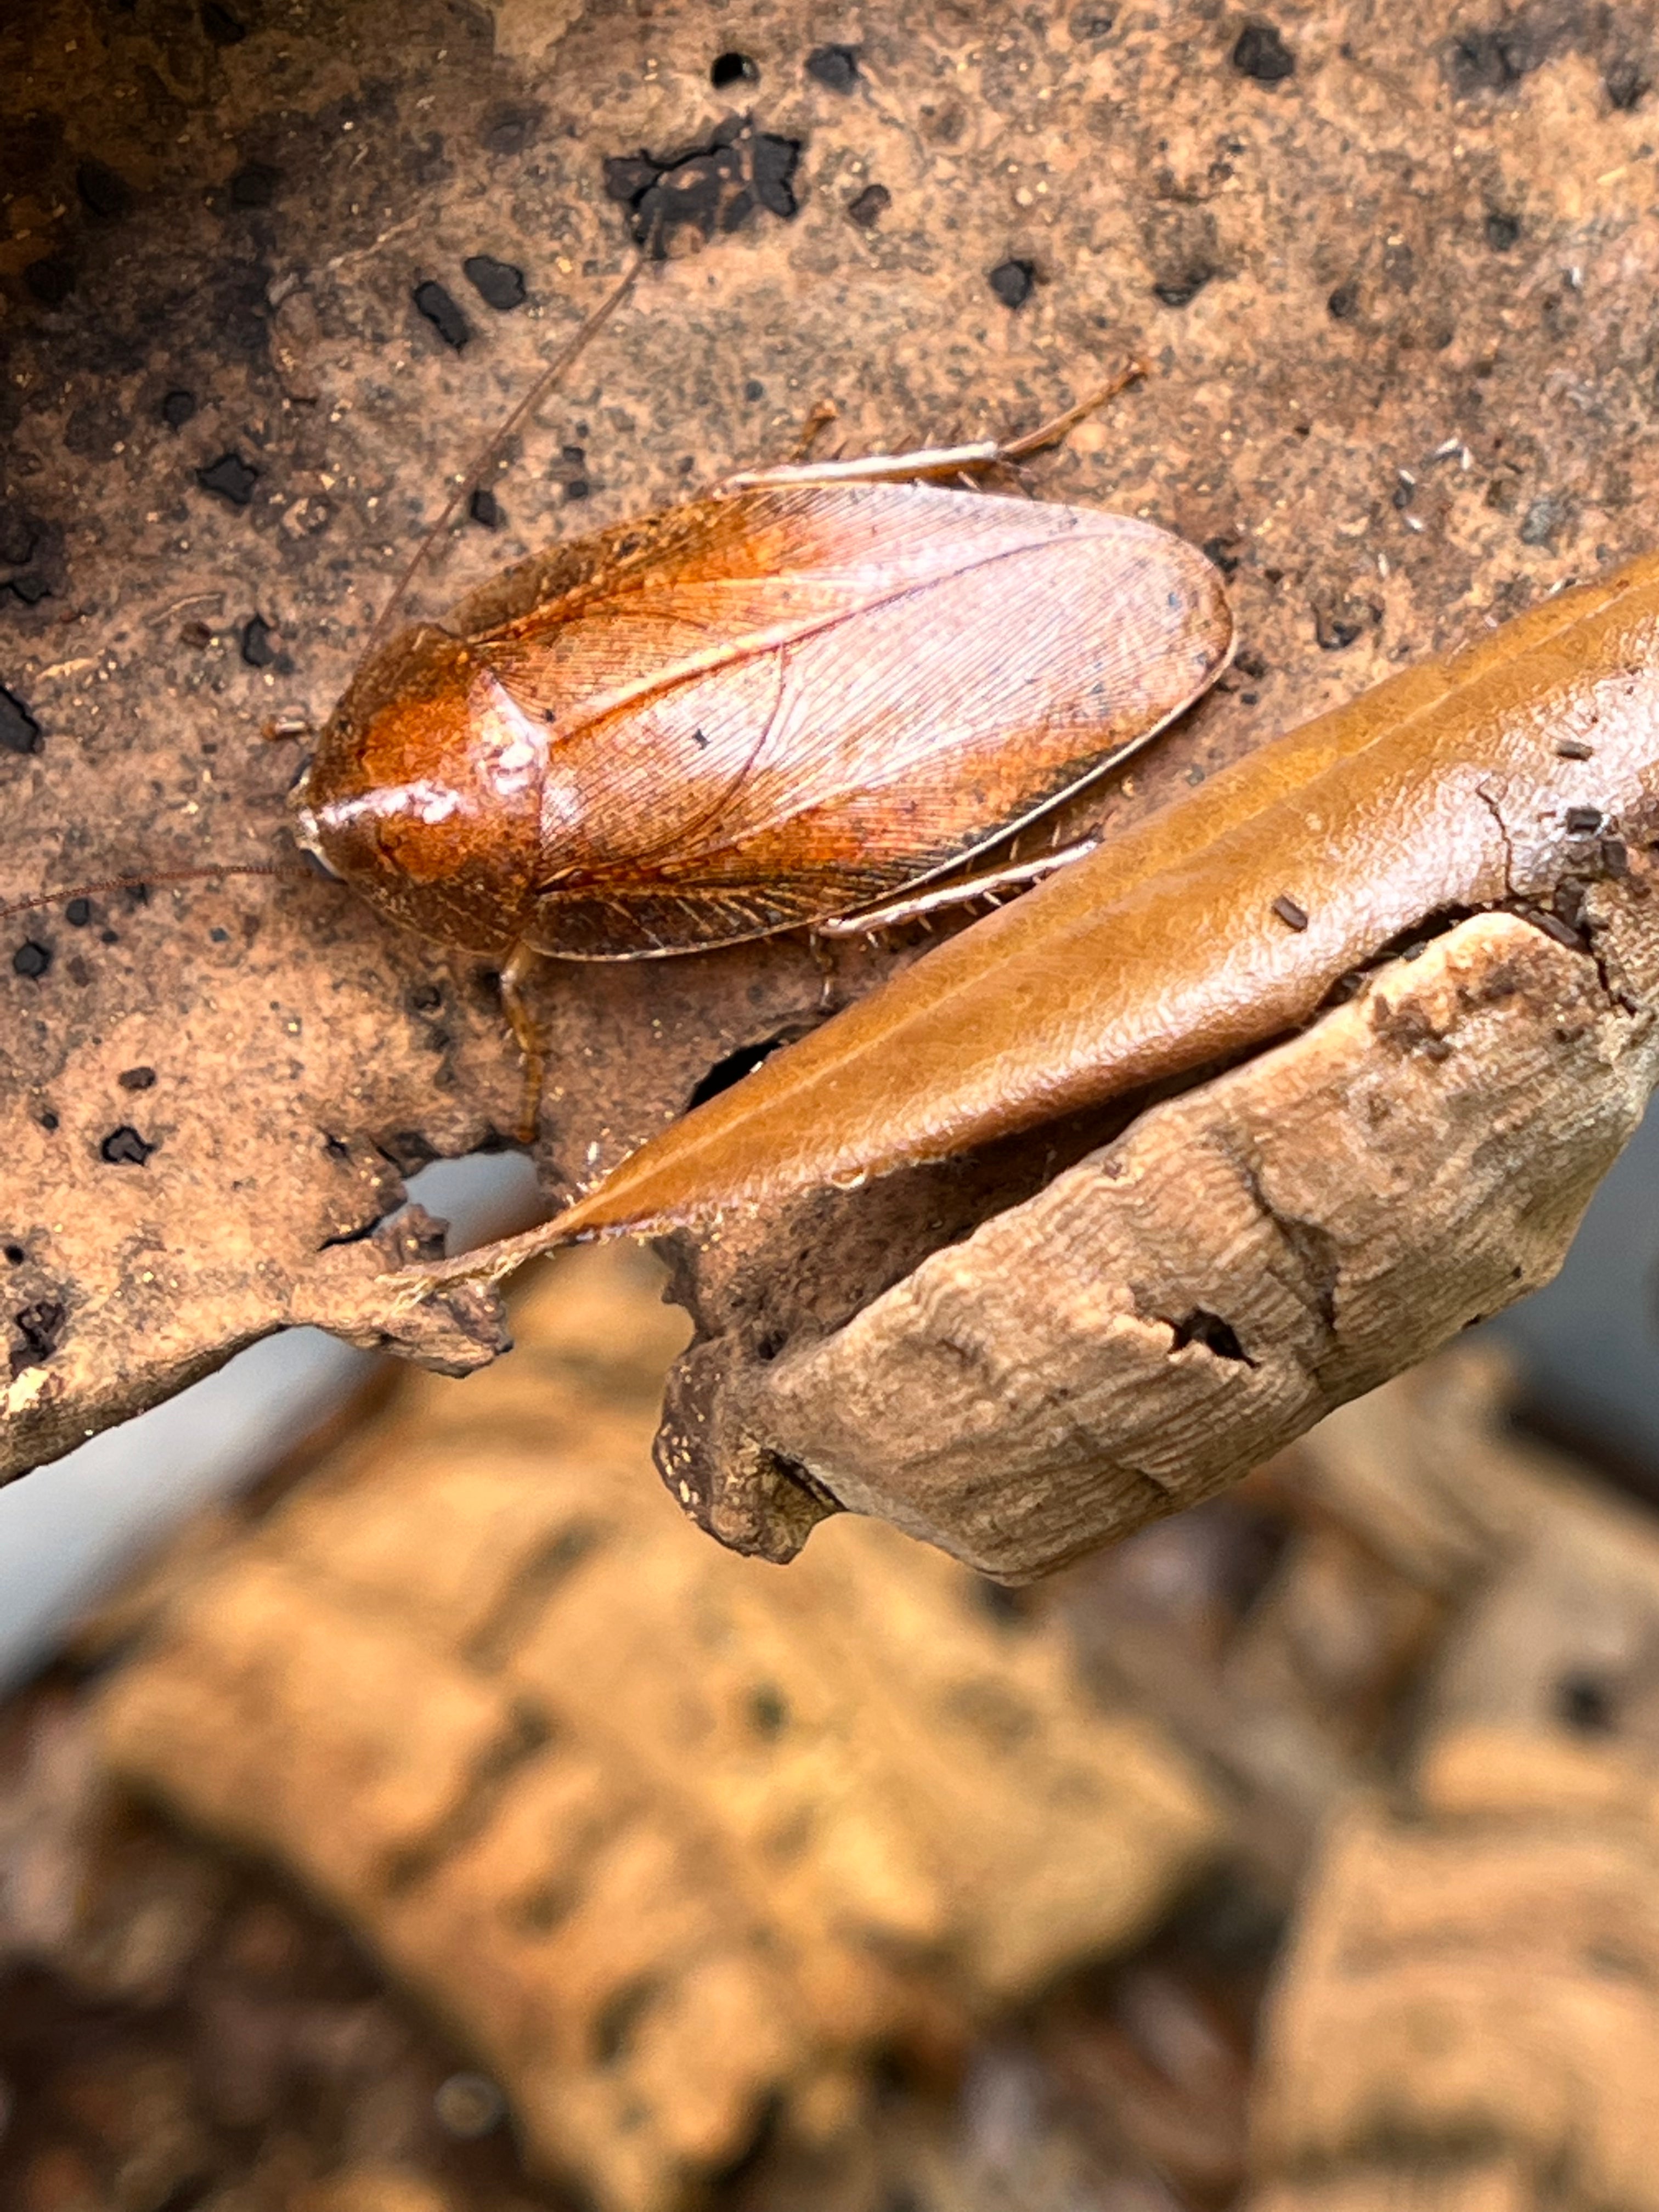 Epilamparae Sp. "Borneo" - Bornean Leaf Roach